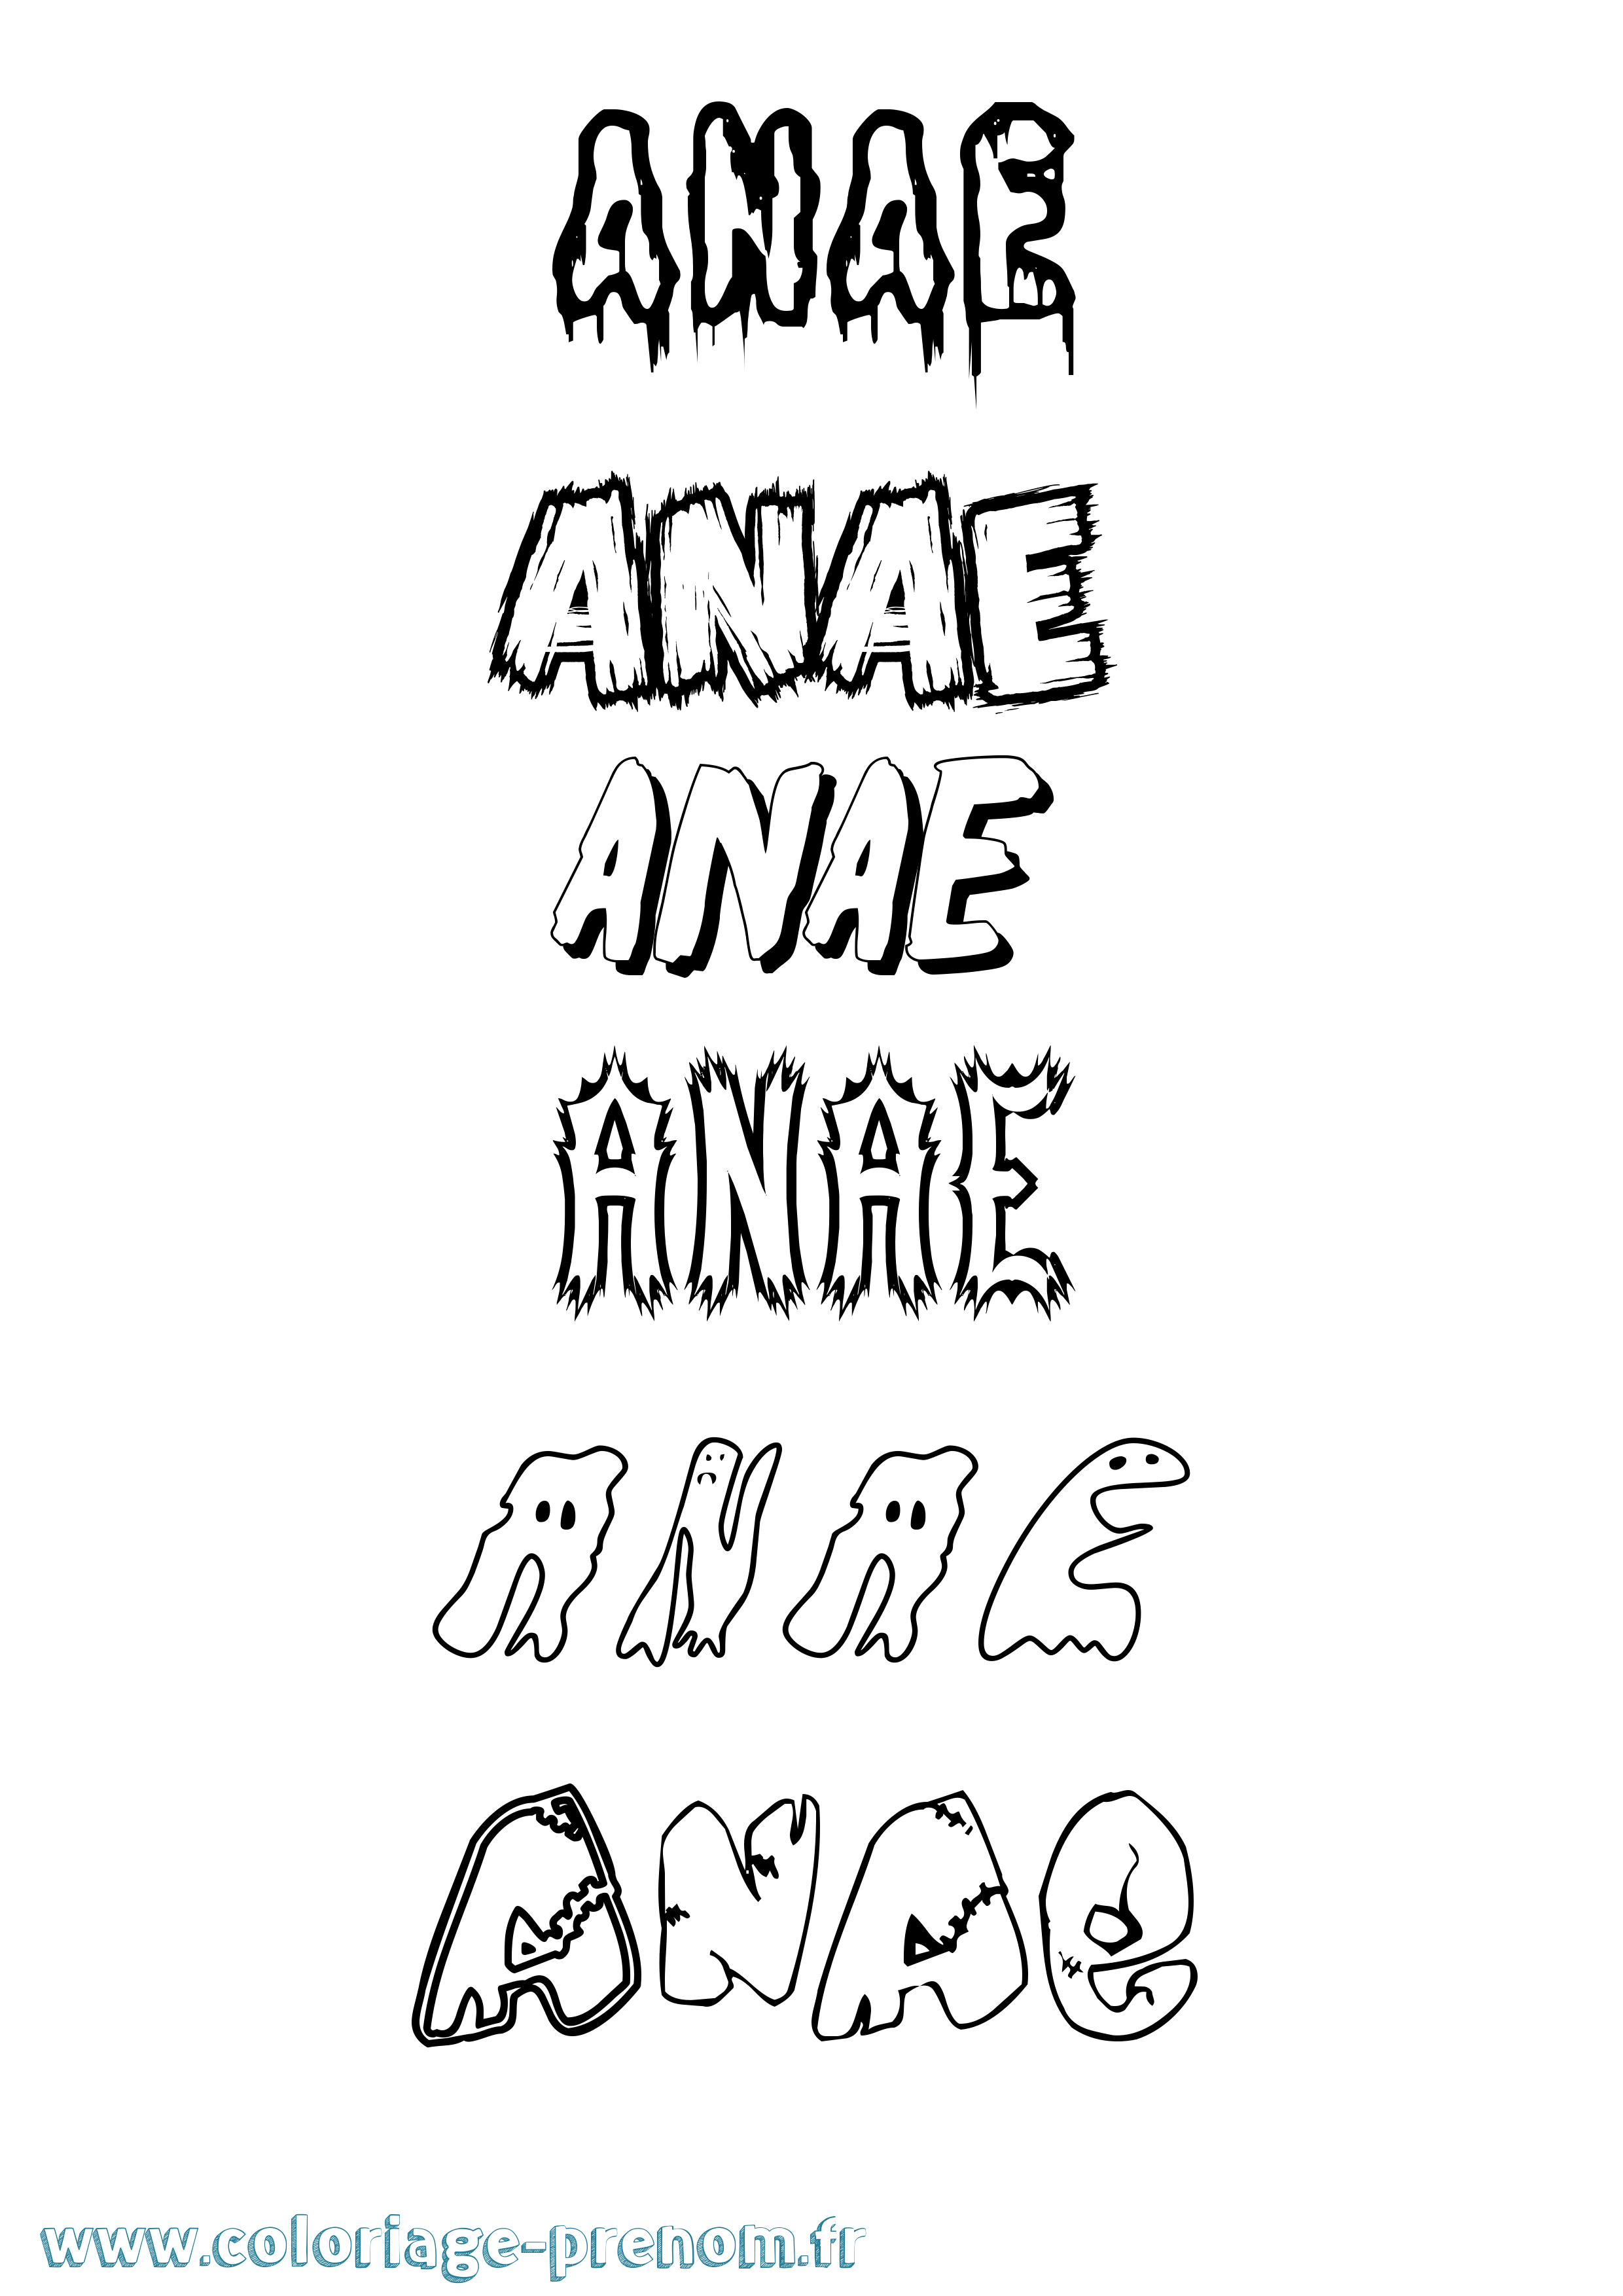 Coloriage prénom Anae